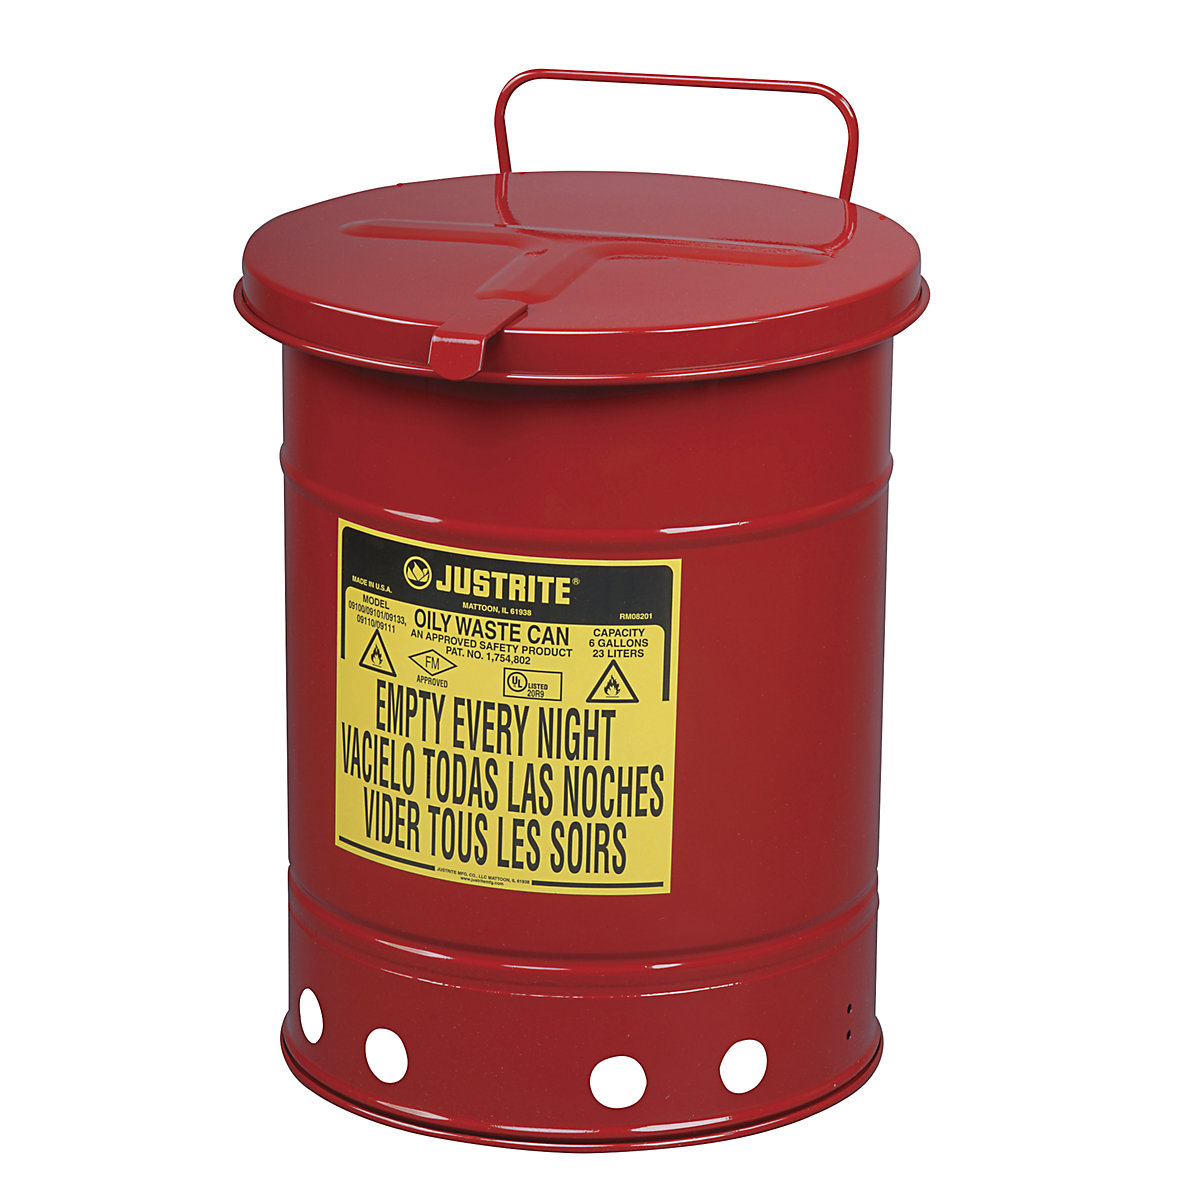 Bezpieczny pojemnik na odpady z blachy stalowej – Justrite